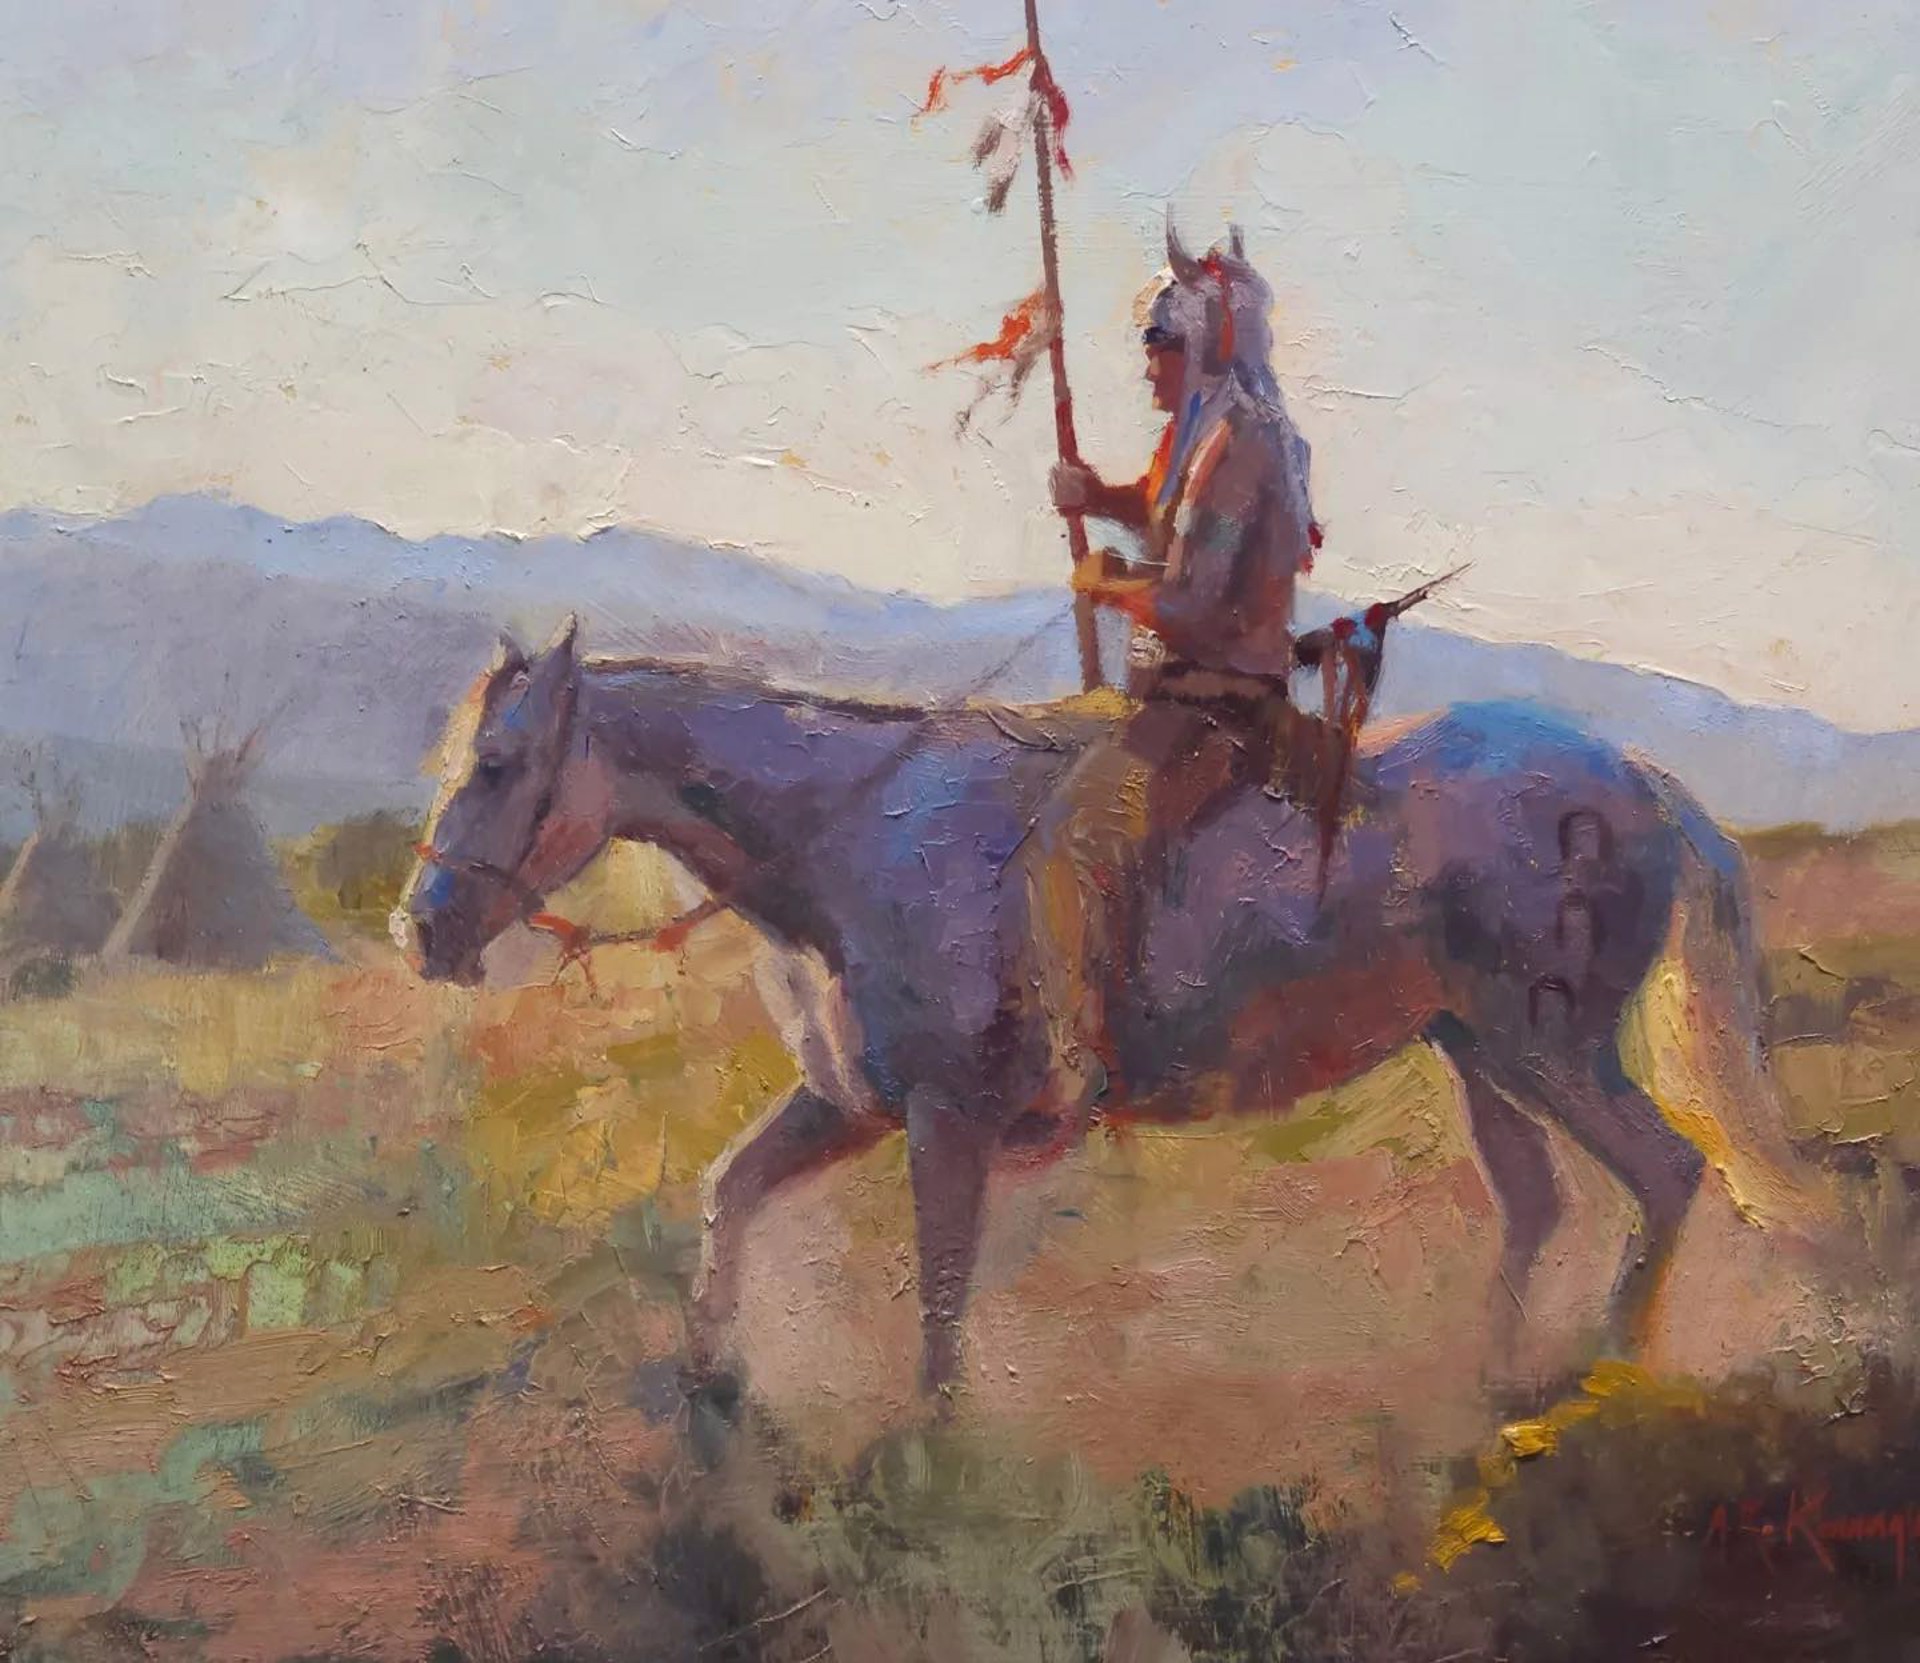 Arapaho Range by Rick Kennington